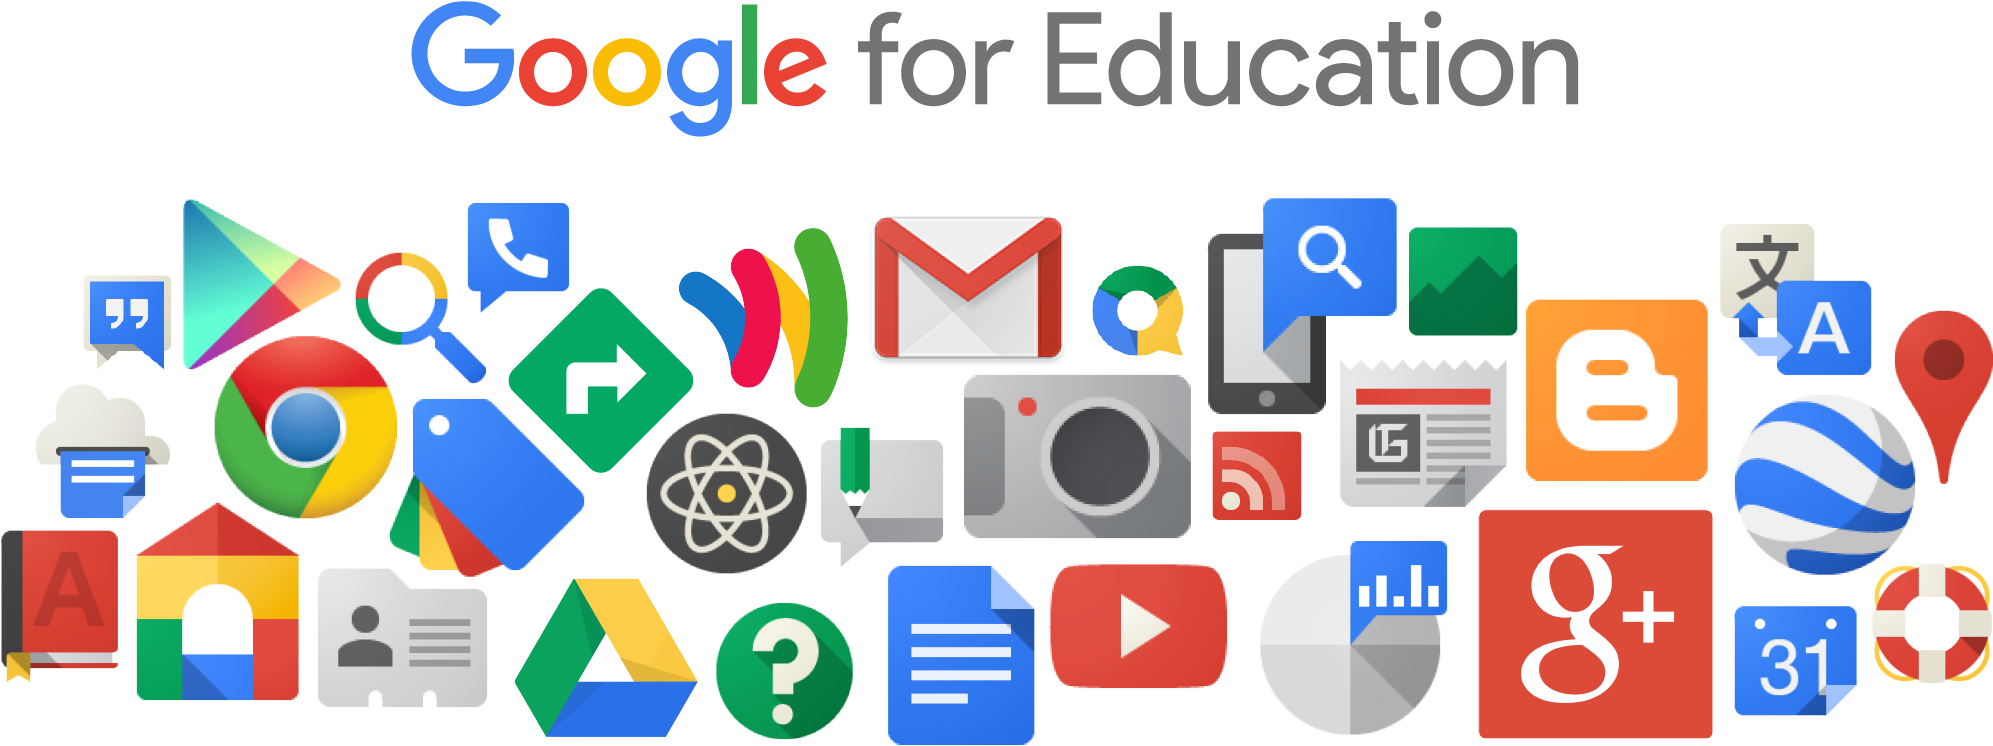 Google for Education apresenta novas ferramentas para ajudar educadores, alunos e famílias no ensino a distância